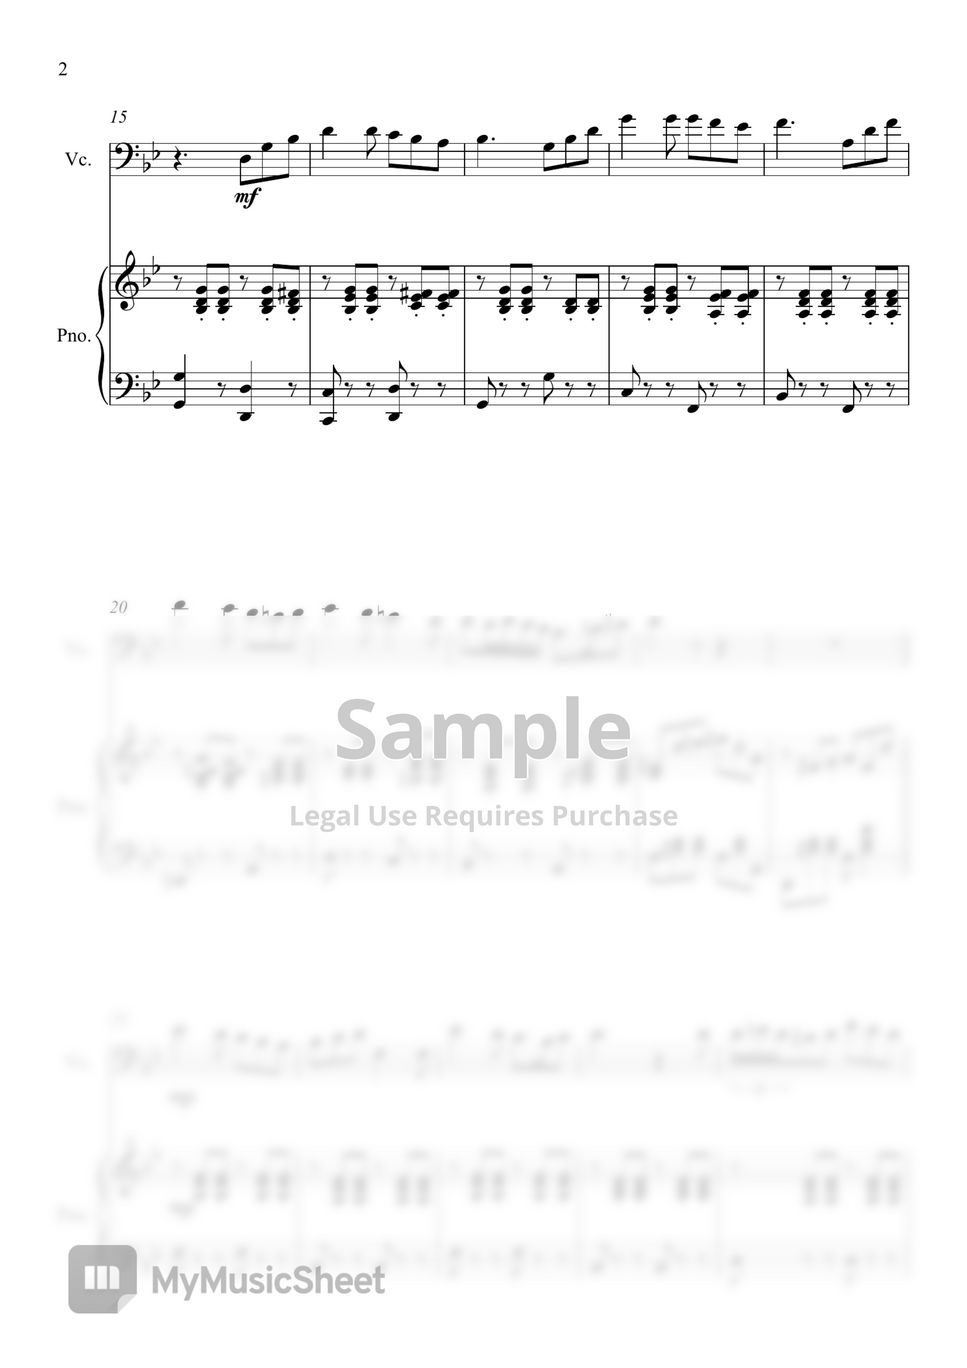 히사이시 조 - 인생의 회전목마 from "하울의 움직이는 성 O.S.T." (첼로와 피아노 듀엣) by Arranger-SJ